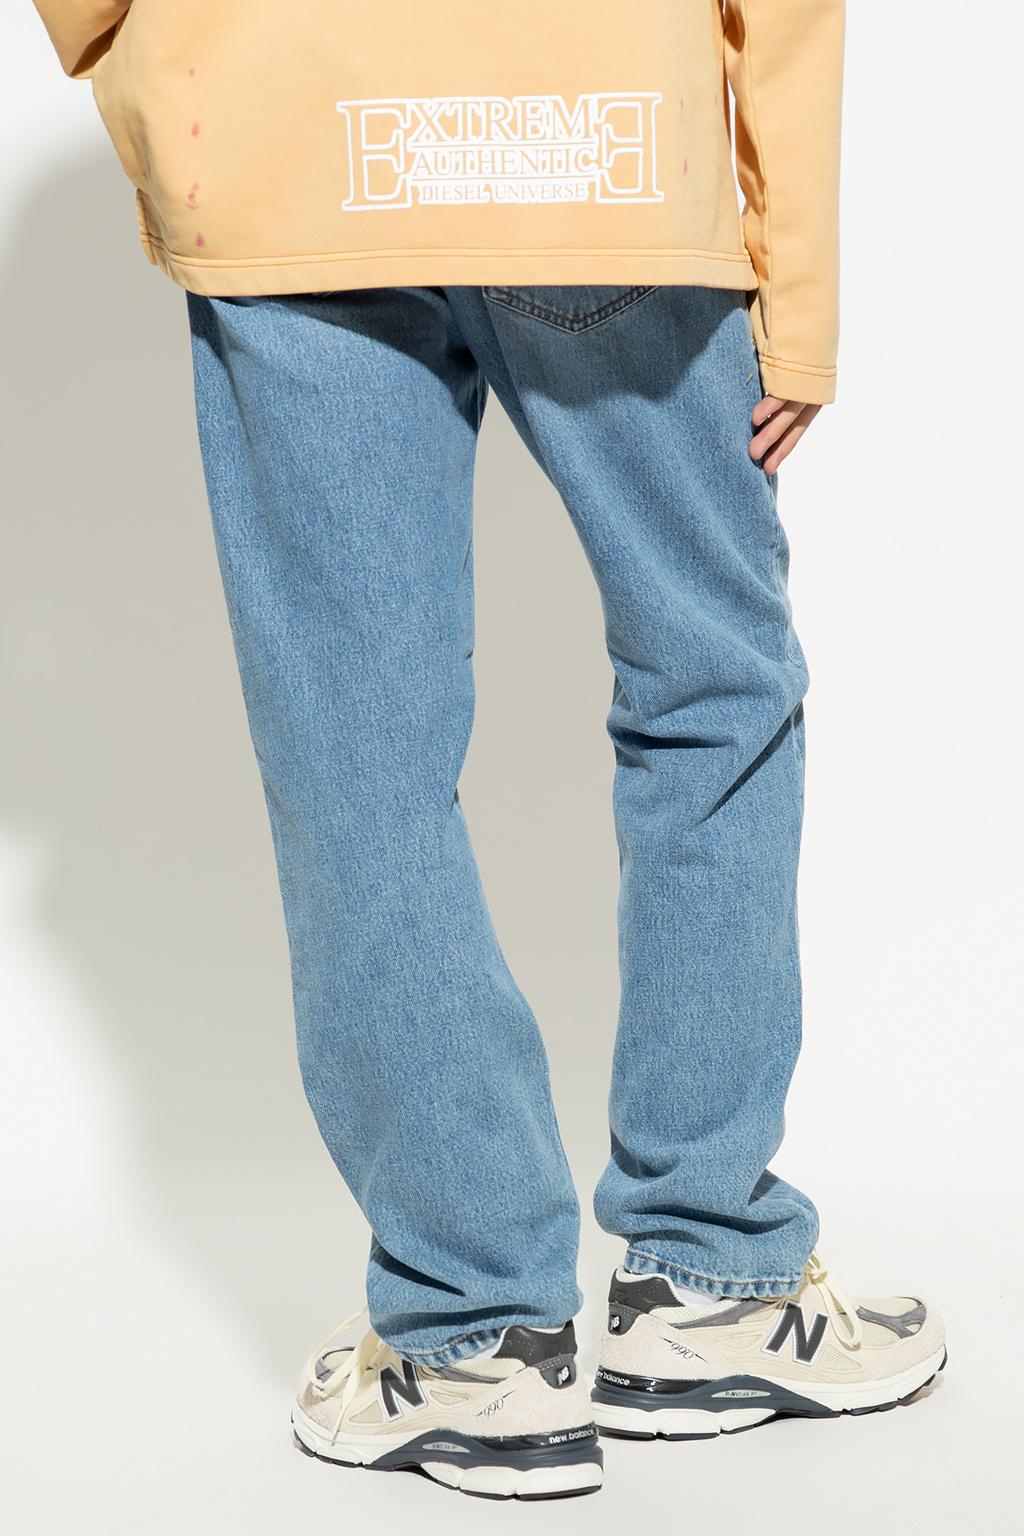 特別セール品 2020 D-Viker SP6 straight jeans hobby.parts